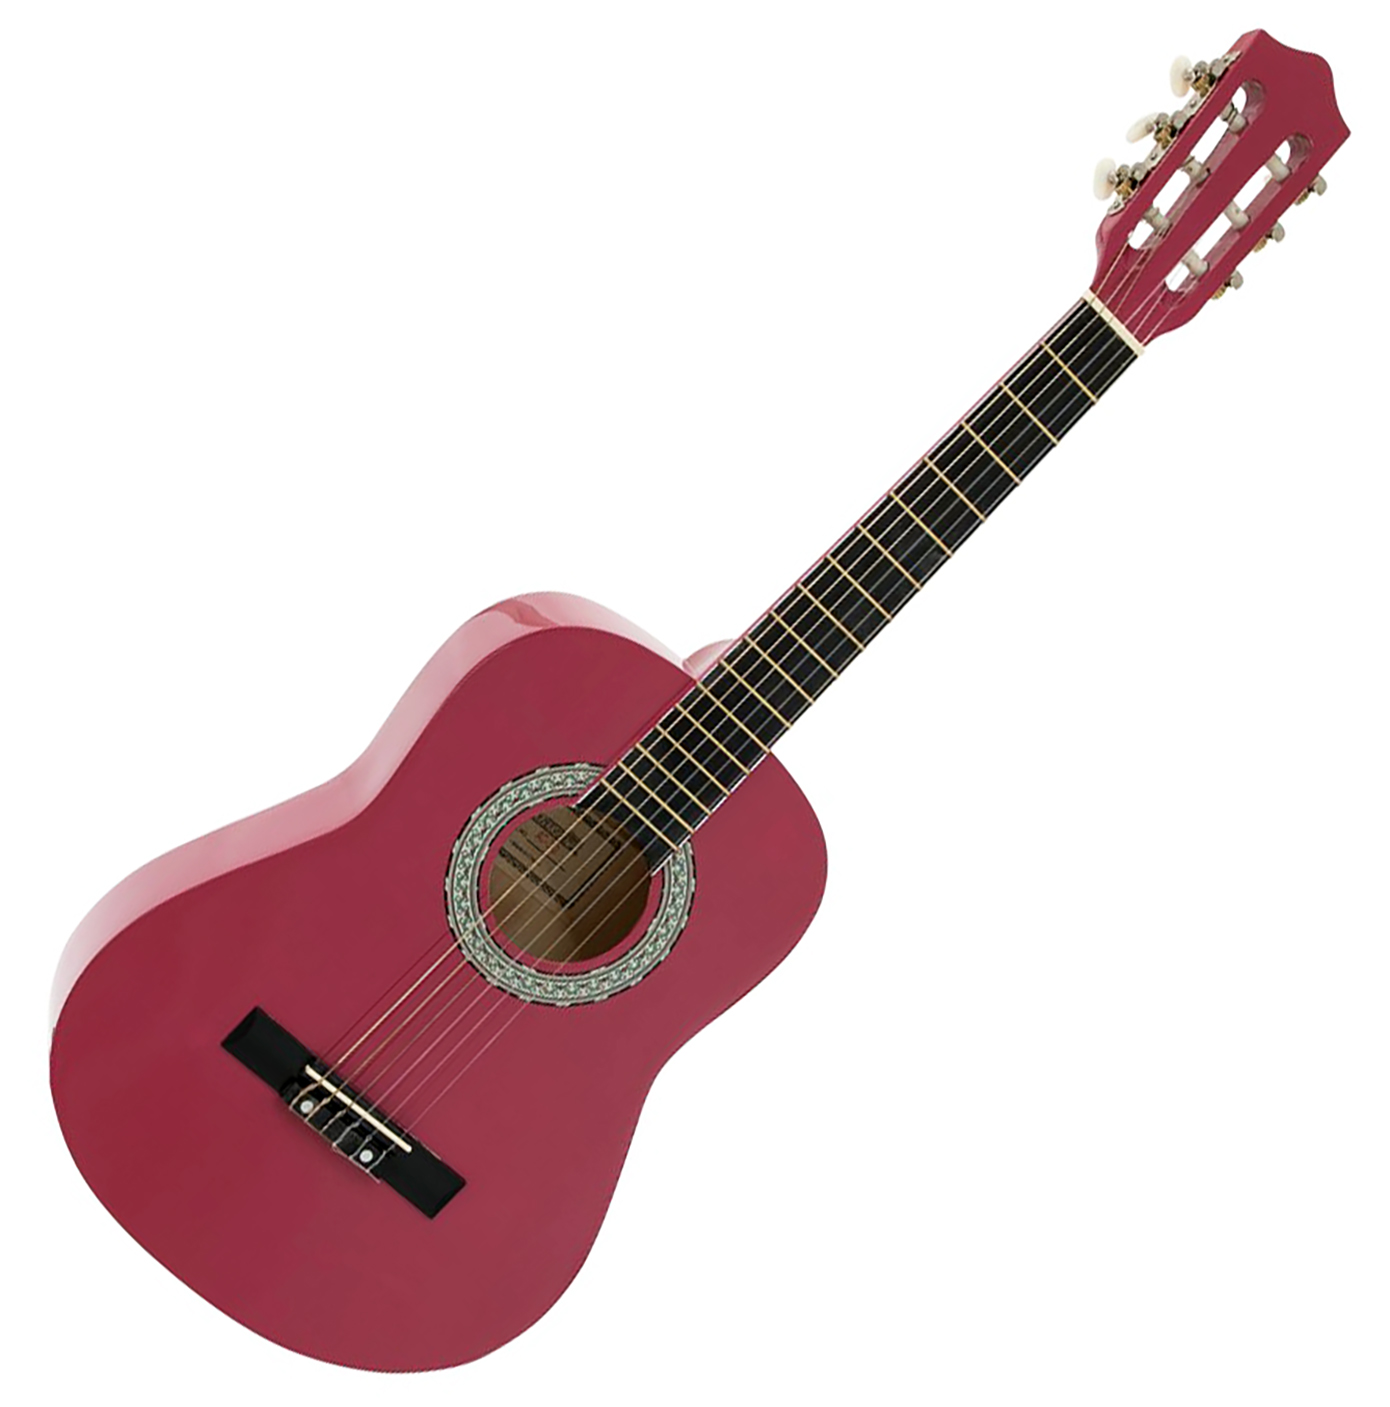 Billede af DiMavery AC-303 Klassisk Spansk Guitar 1/2 (Pink)